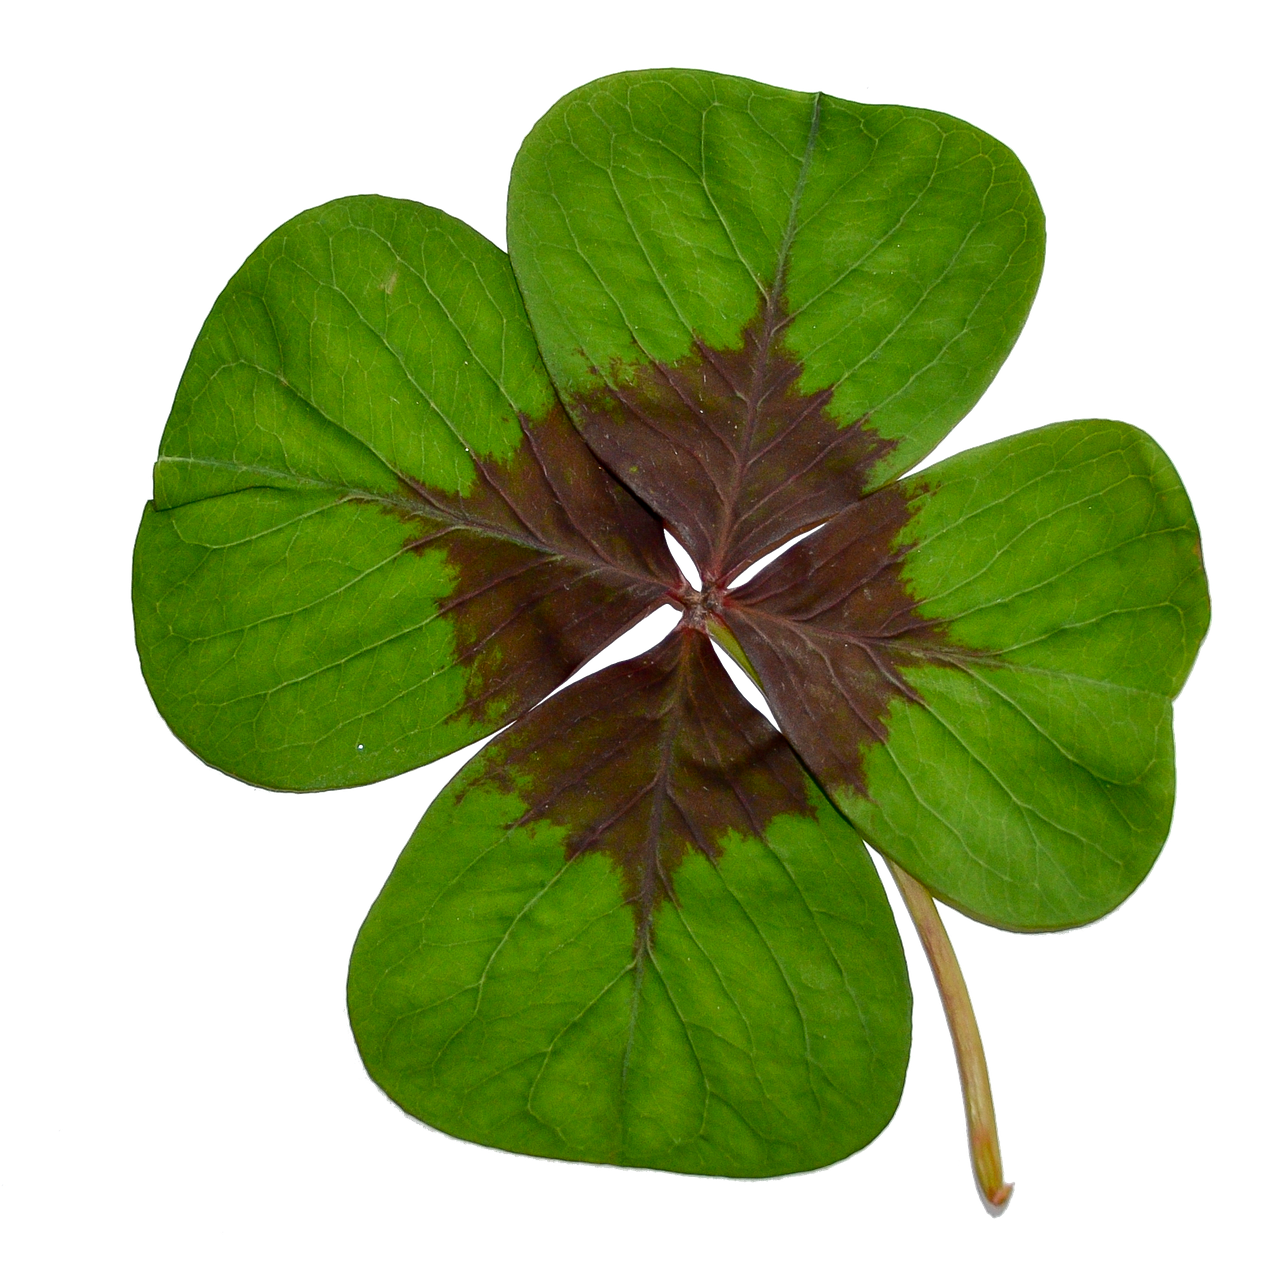 Four Leaf Cloveron Black Background PNG image